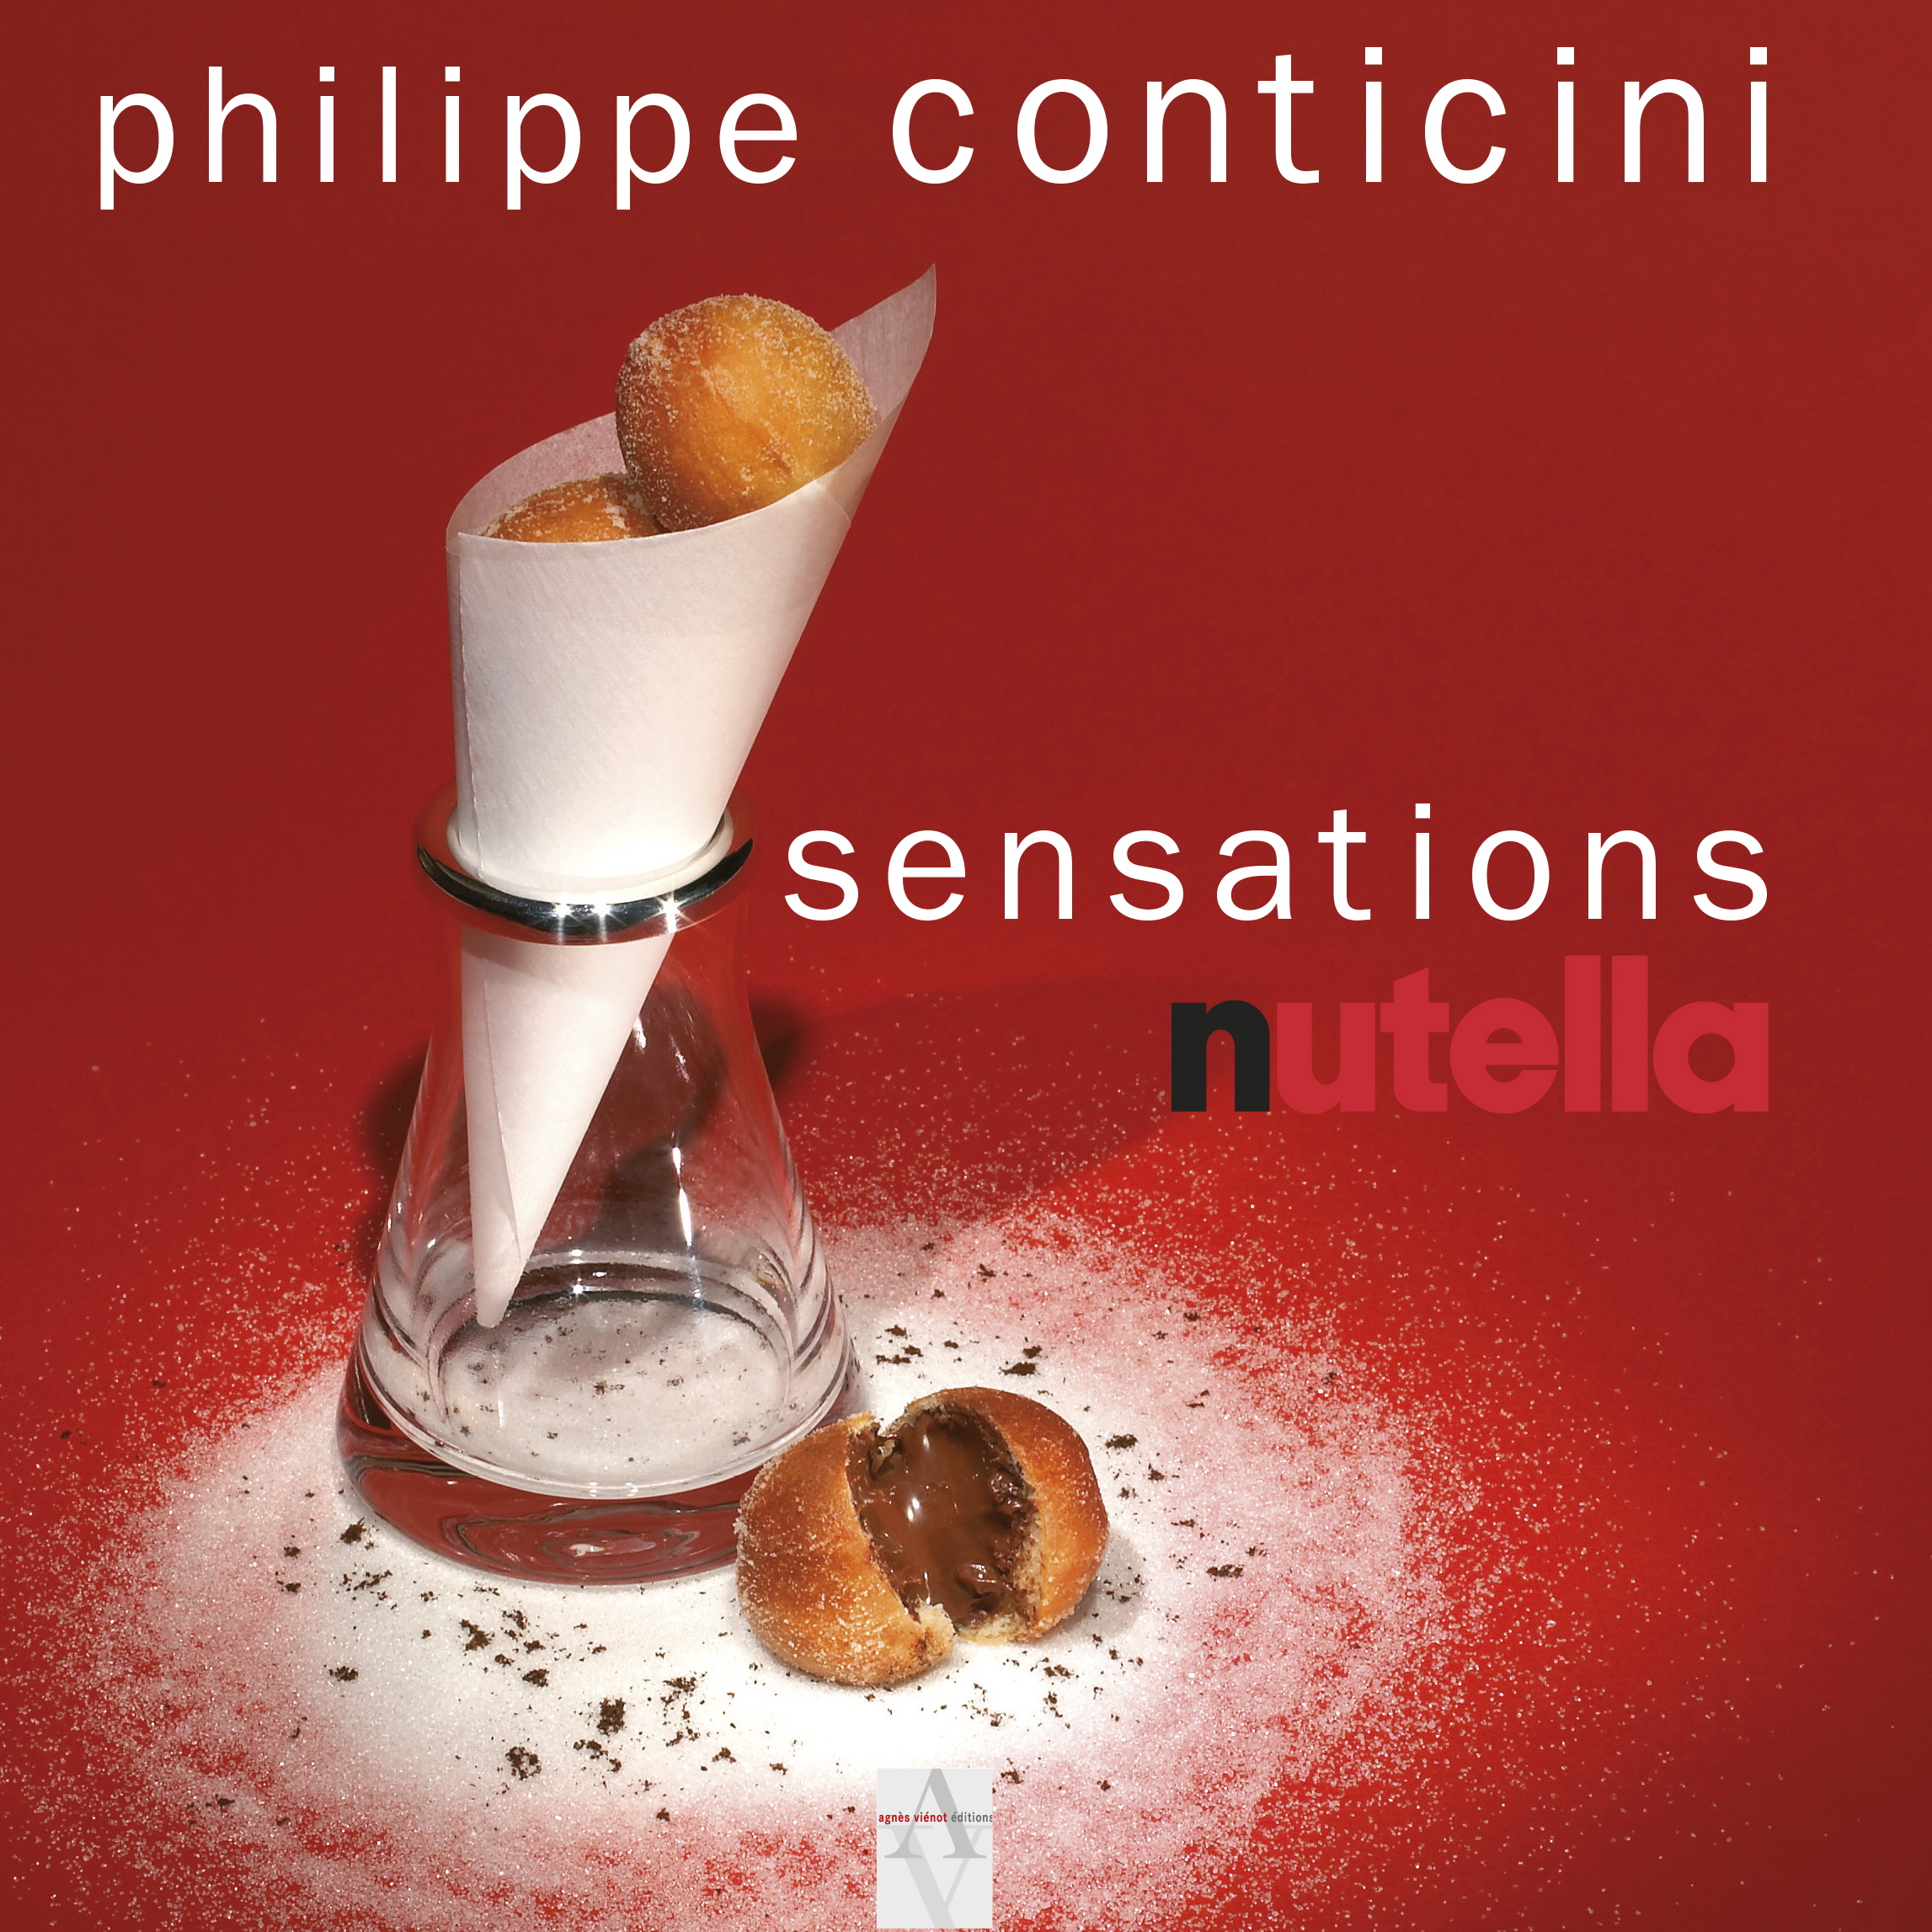 Nutella Sensations recipe book cover